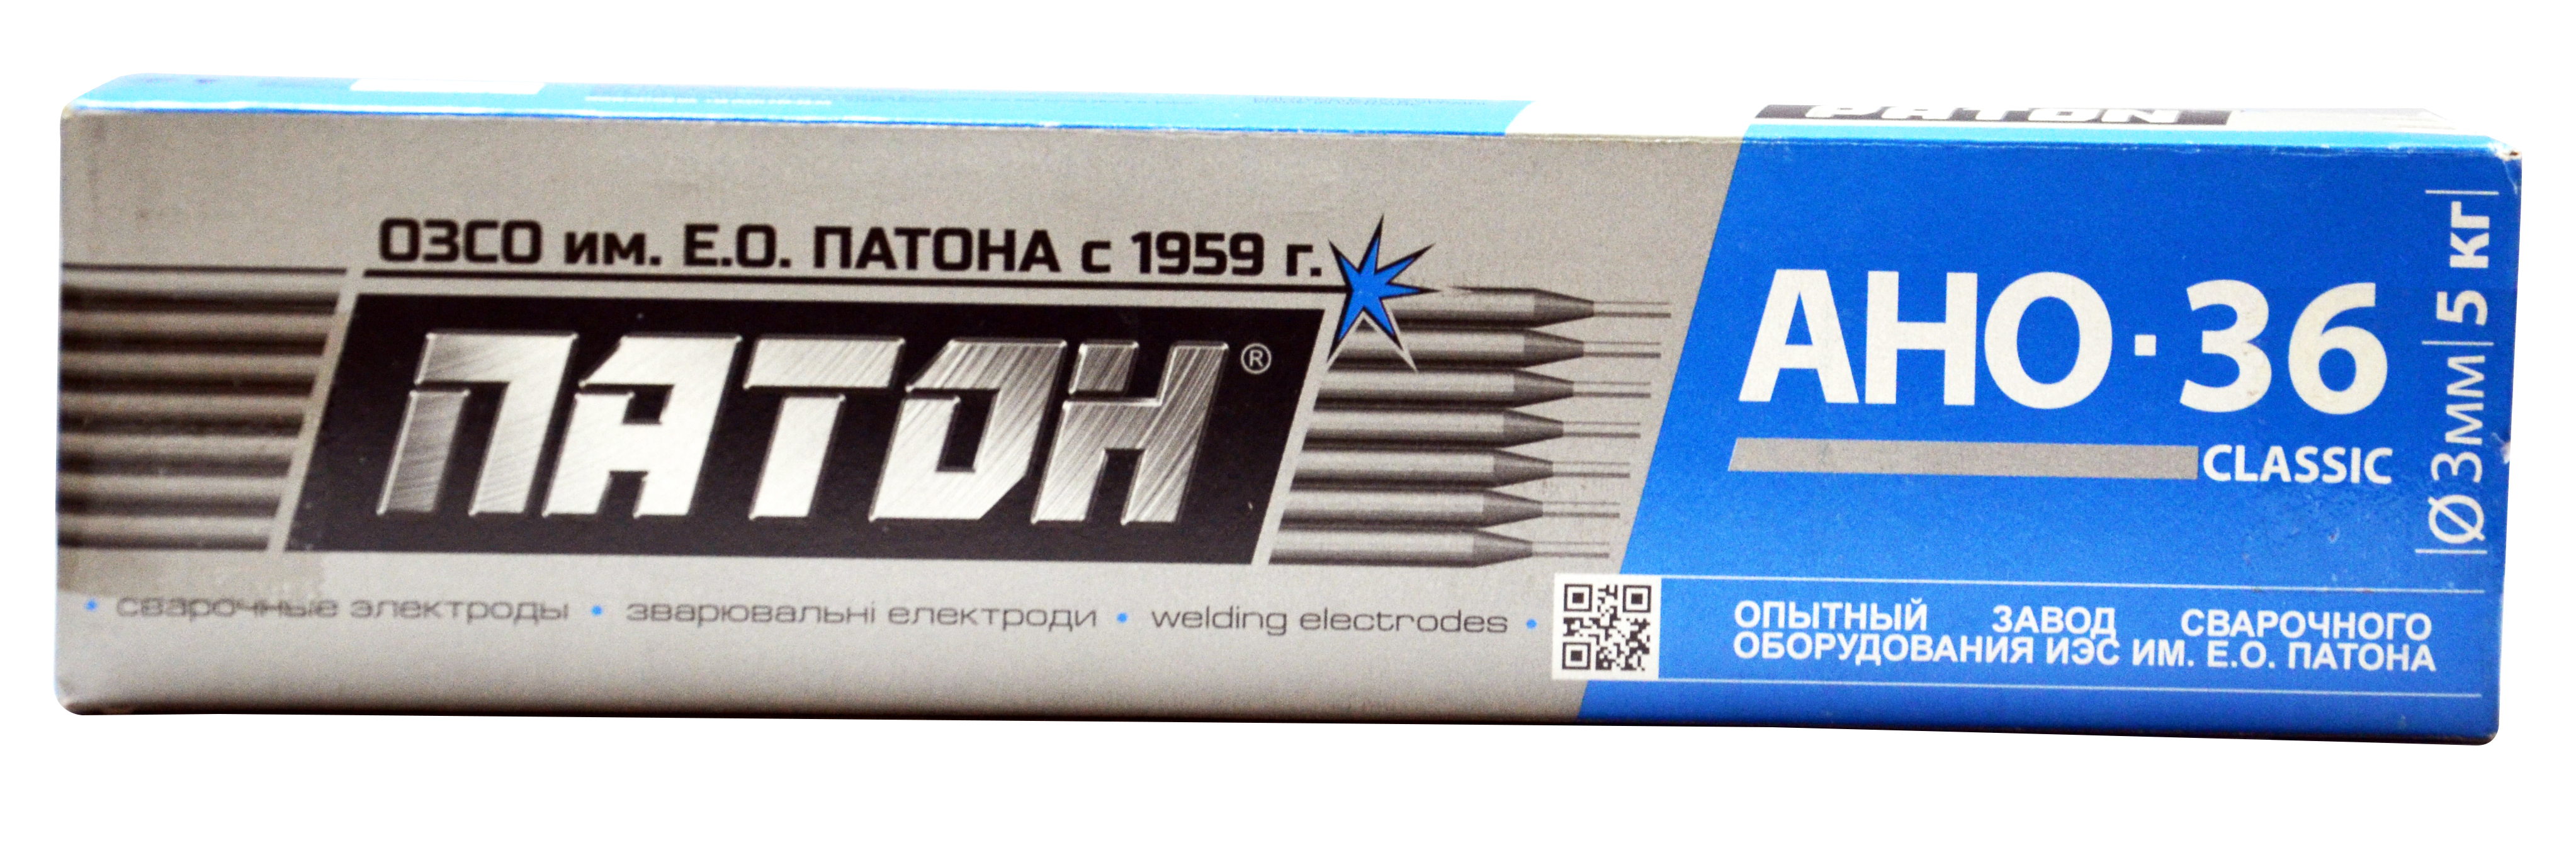 12-219 Зварювальні електроди АНО-36, d 4мм, 5 кг, Патон | Україна